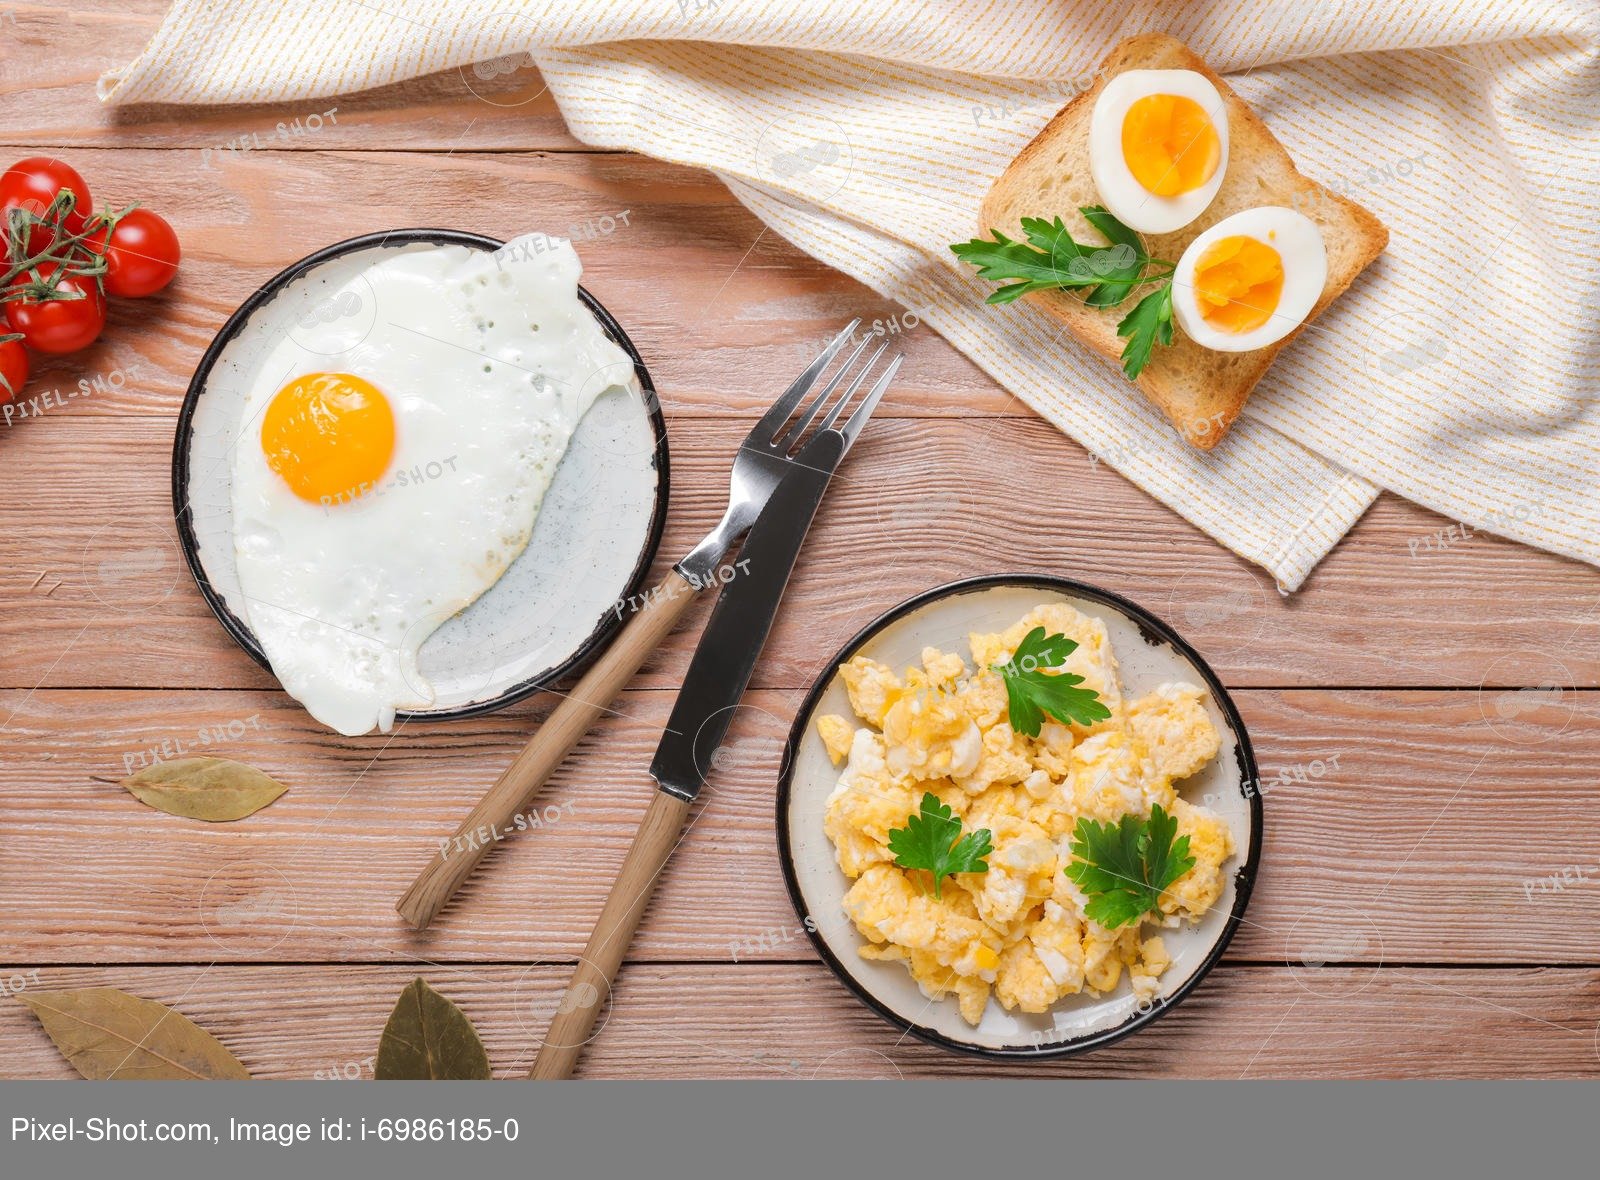 Можно есть яйца каждый день на завтрак. Завтрак. Яйца вкрутую на завтрак. Завтрак из яичного белка. Завтрак полезный глазунья.